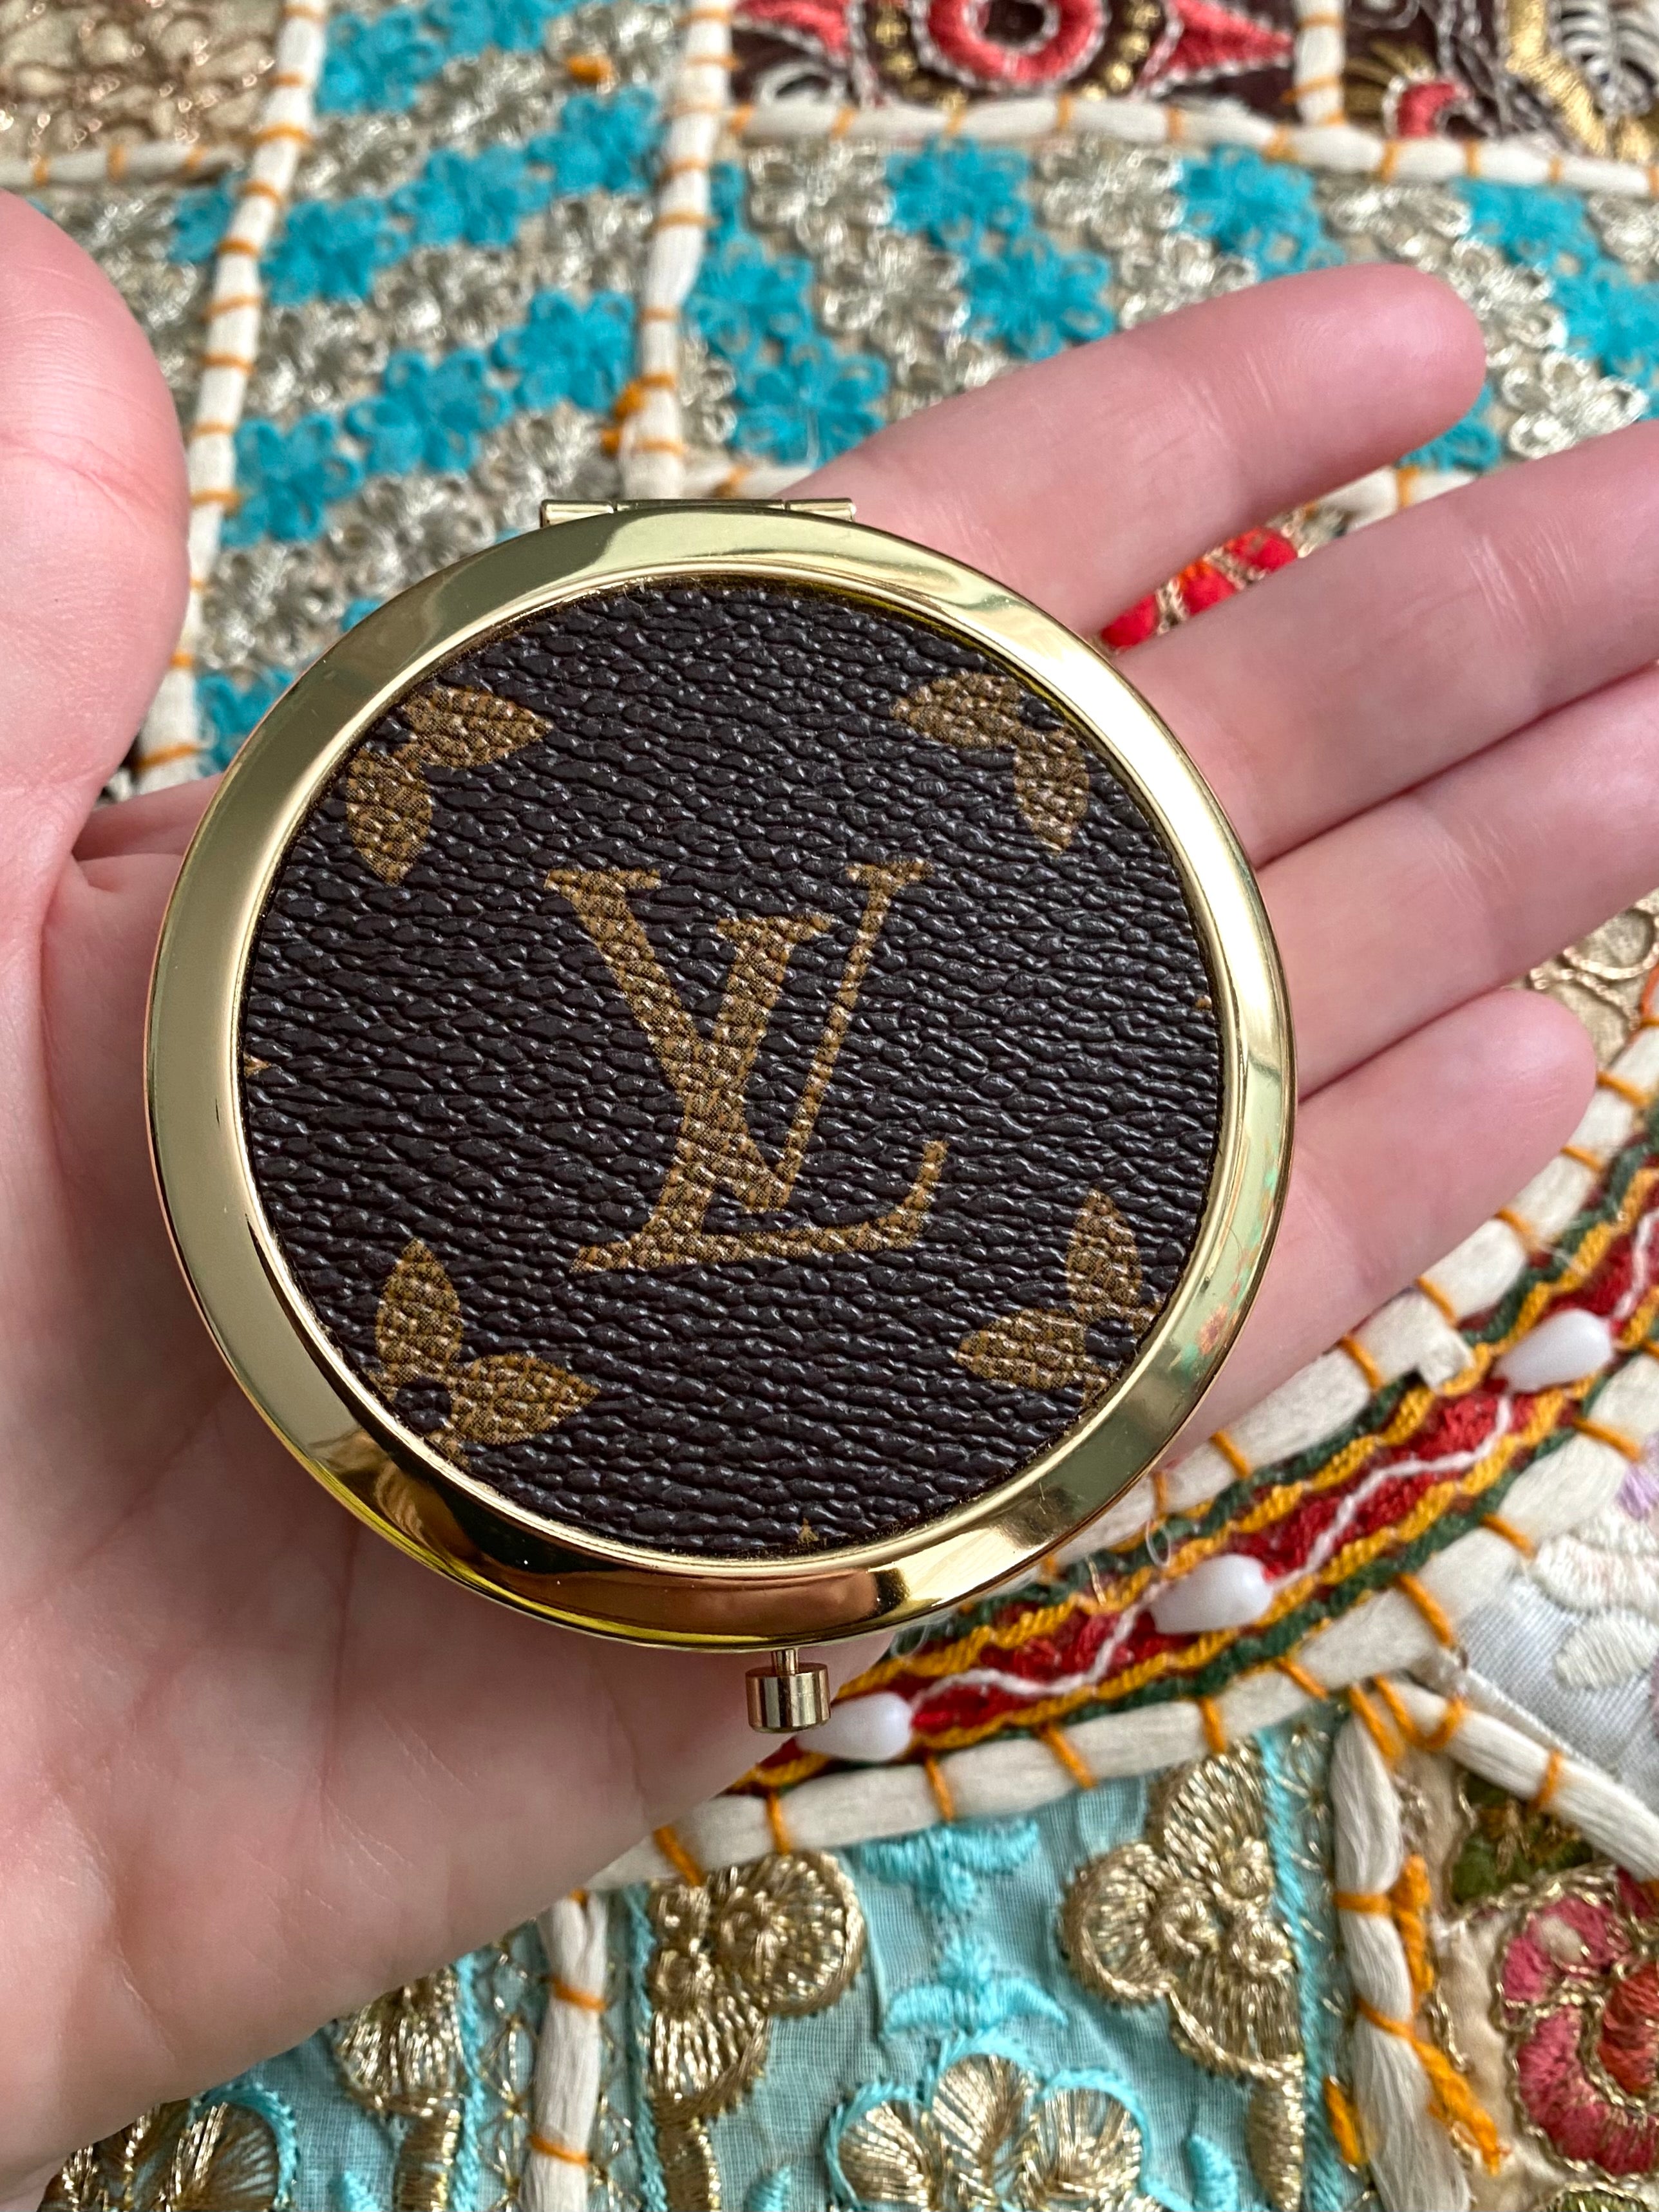 Louis Vuitton Bag Authentic Louis Vuitton Mirror Mini 